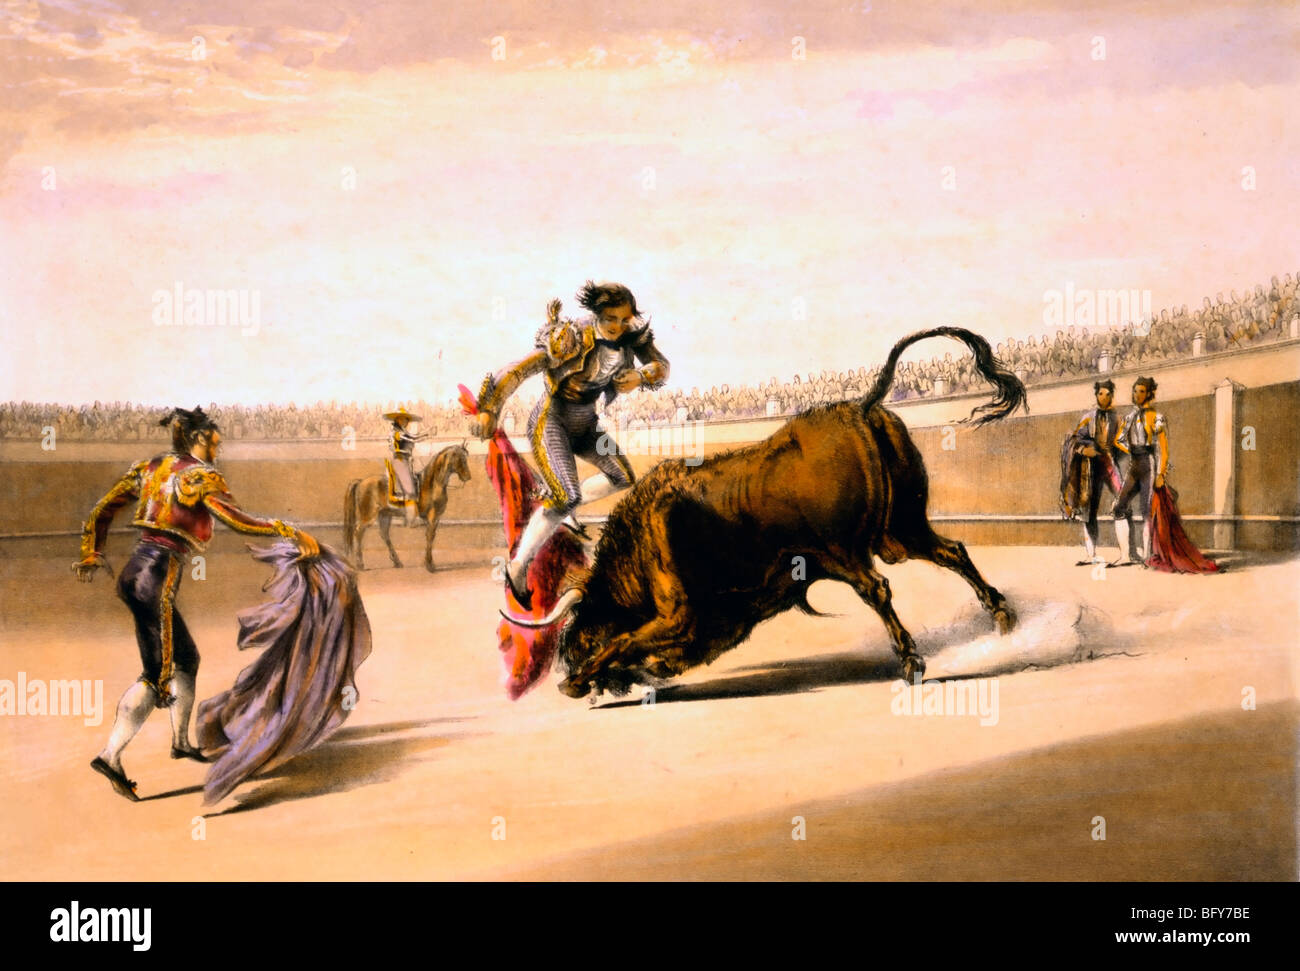 Ein Matador, beim Stierkampf, springen aus dem Pfad der Ladestation Bull, da es in das Kap der Sprung oder Salta Tras Cuernos taucht Stockfoto